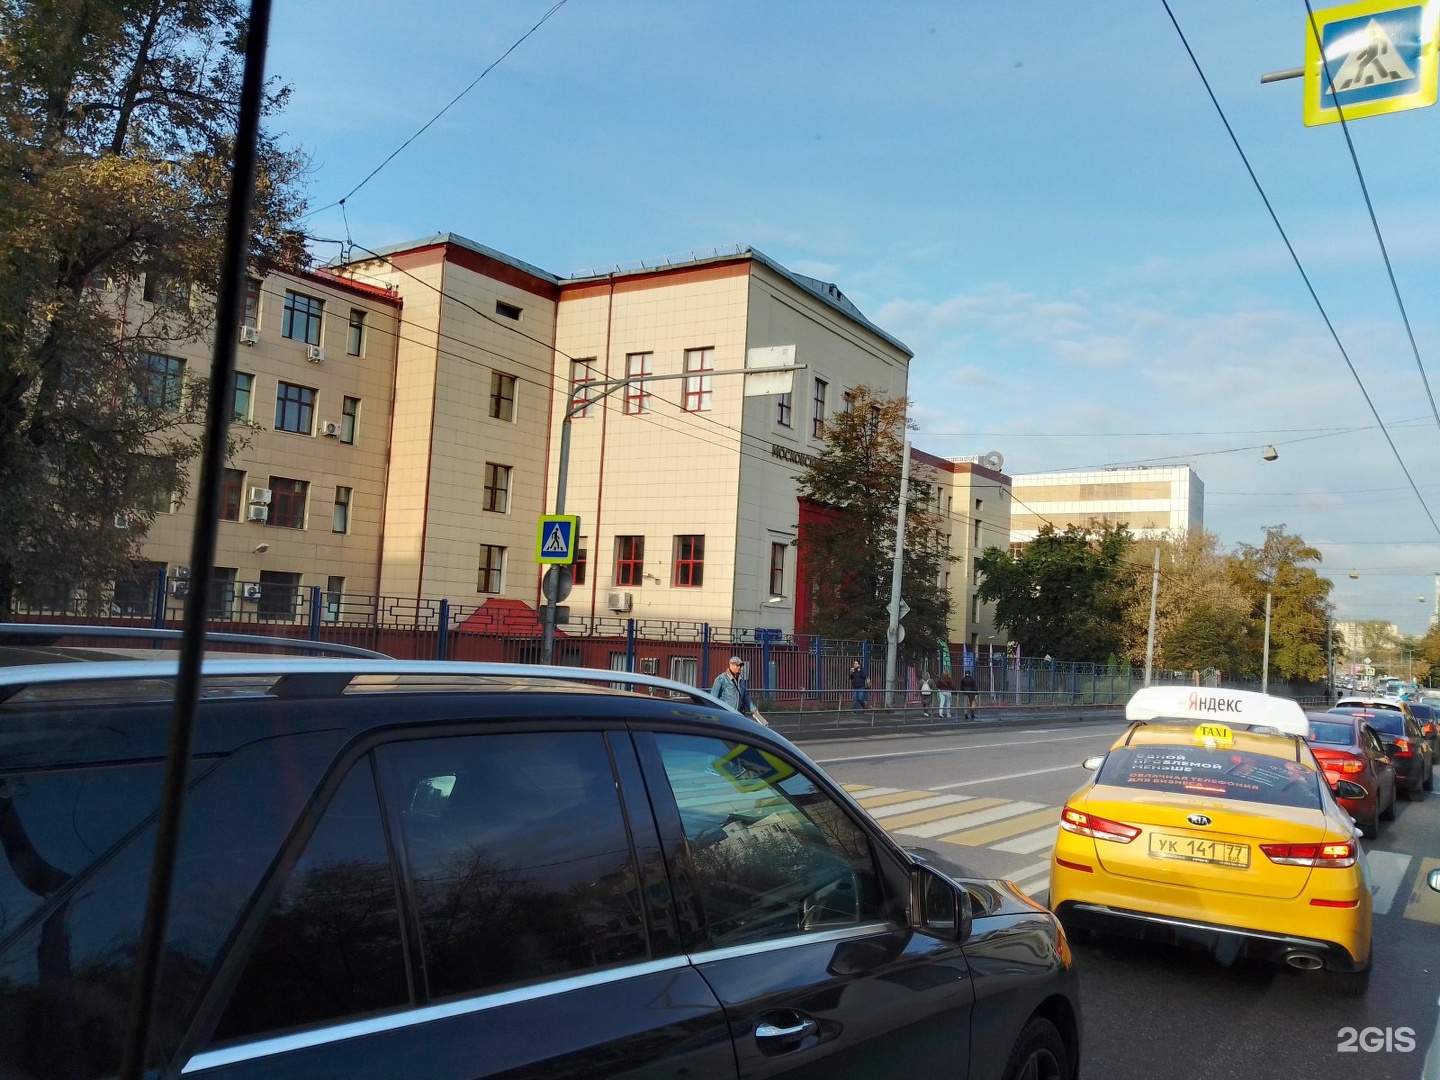 Москва большая семеновская 38 политехнический университет